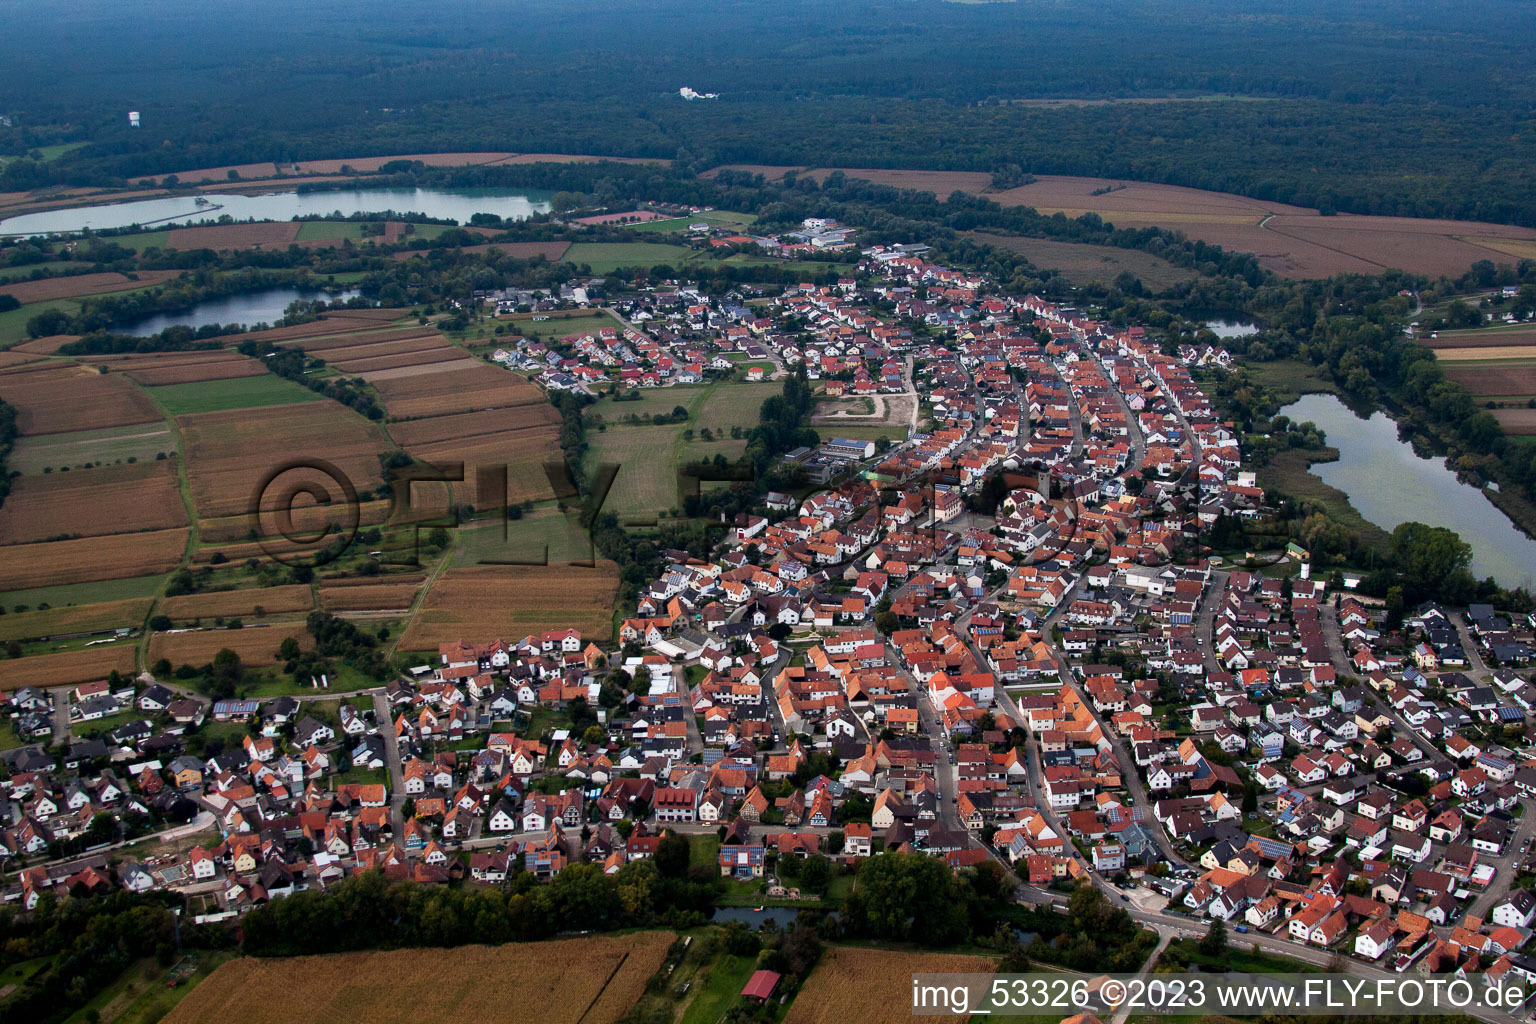 Drone image of Neuburg in the state Rhineland-Palatinate, Germany